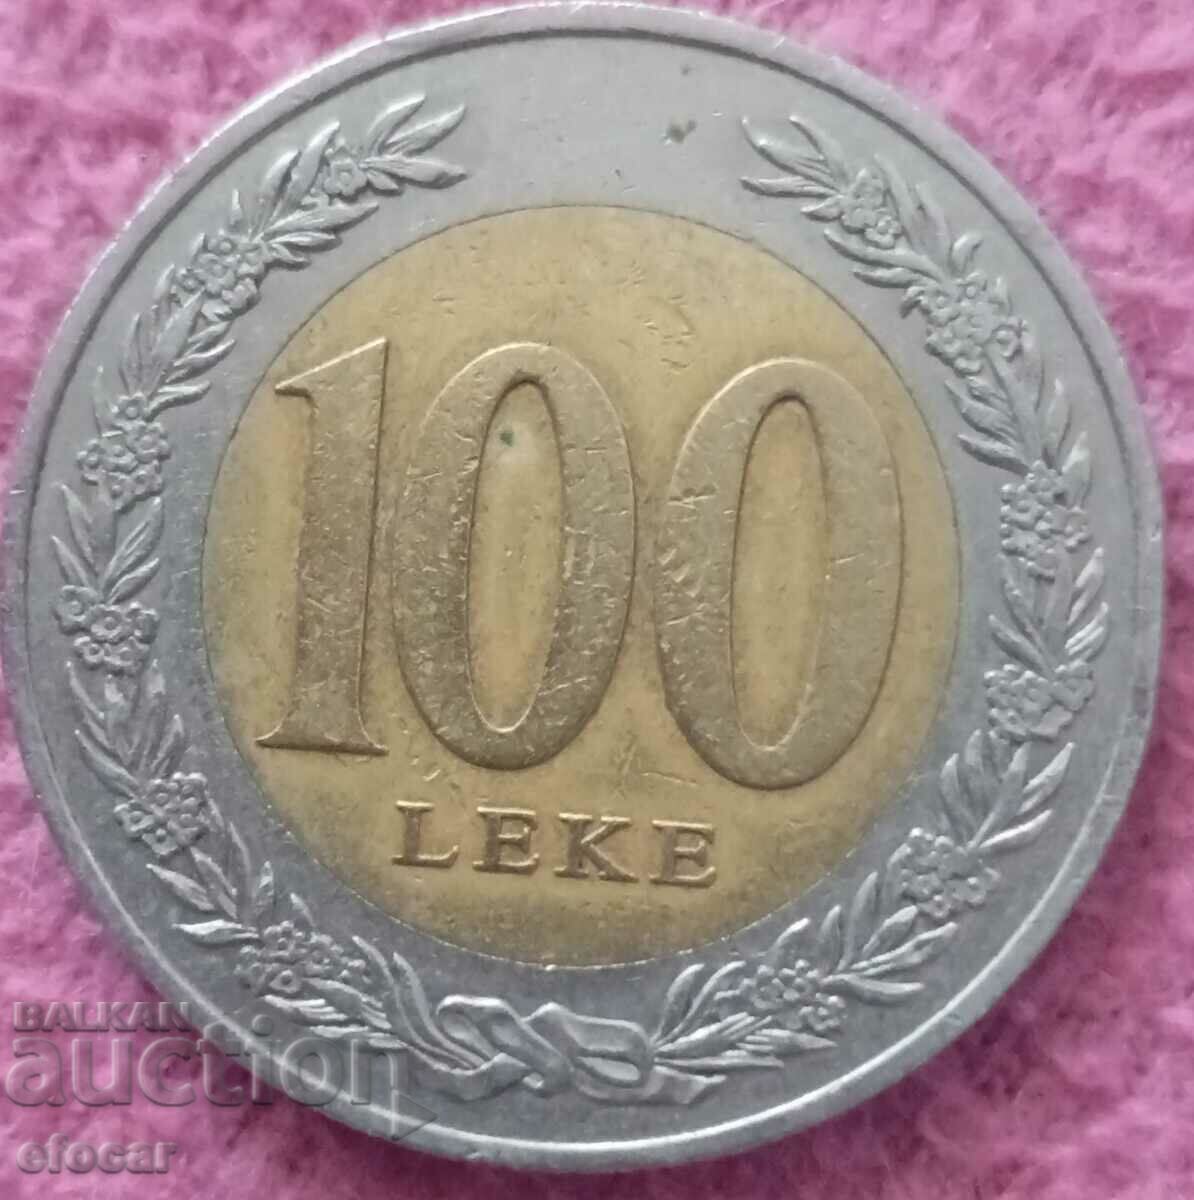 100 леке Албания 2000